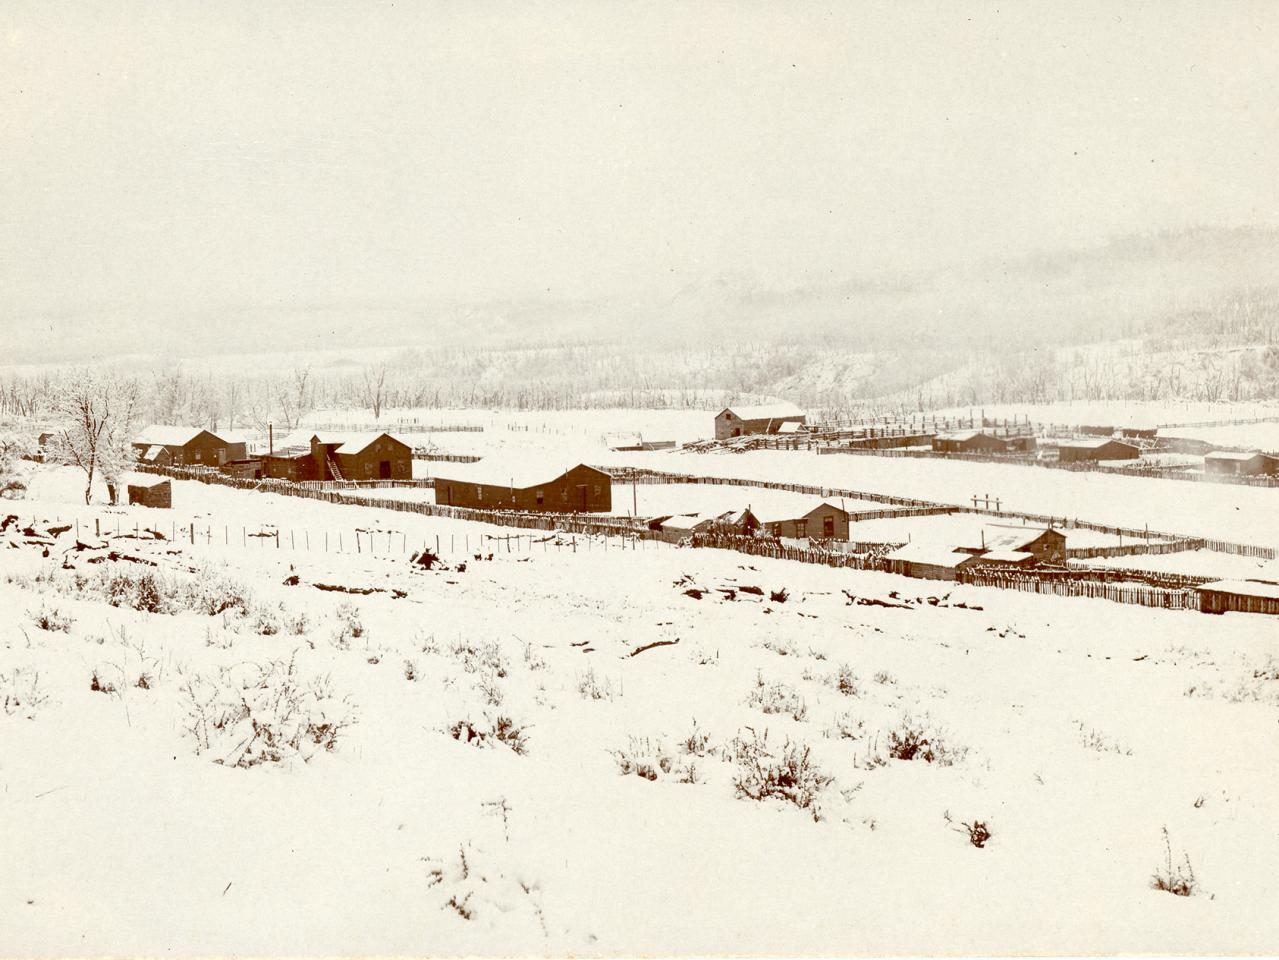 Vista general de la estancia Coyhaique en invierno (ca. 1920?)